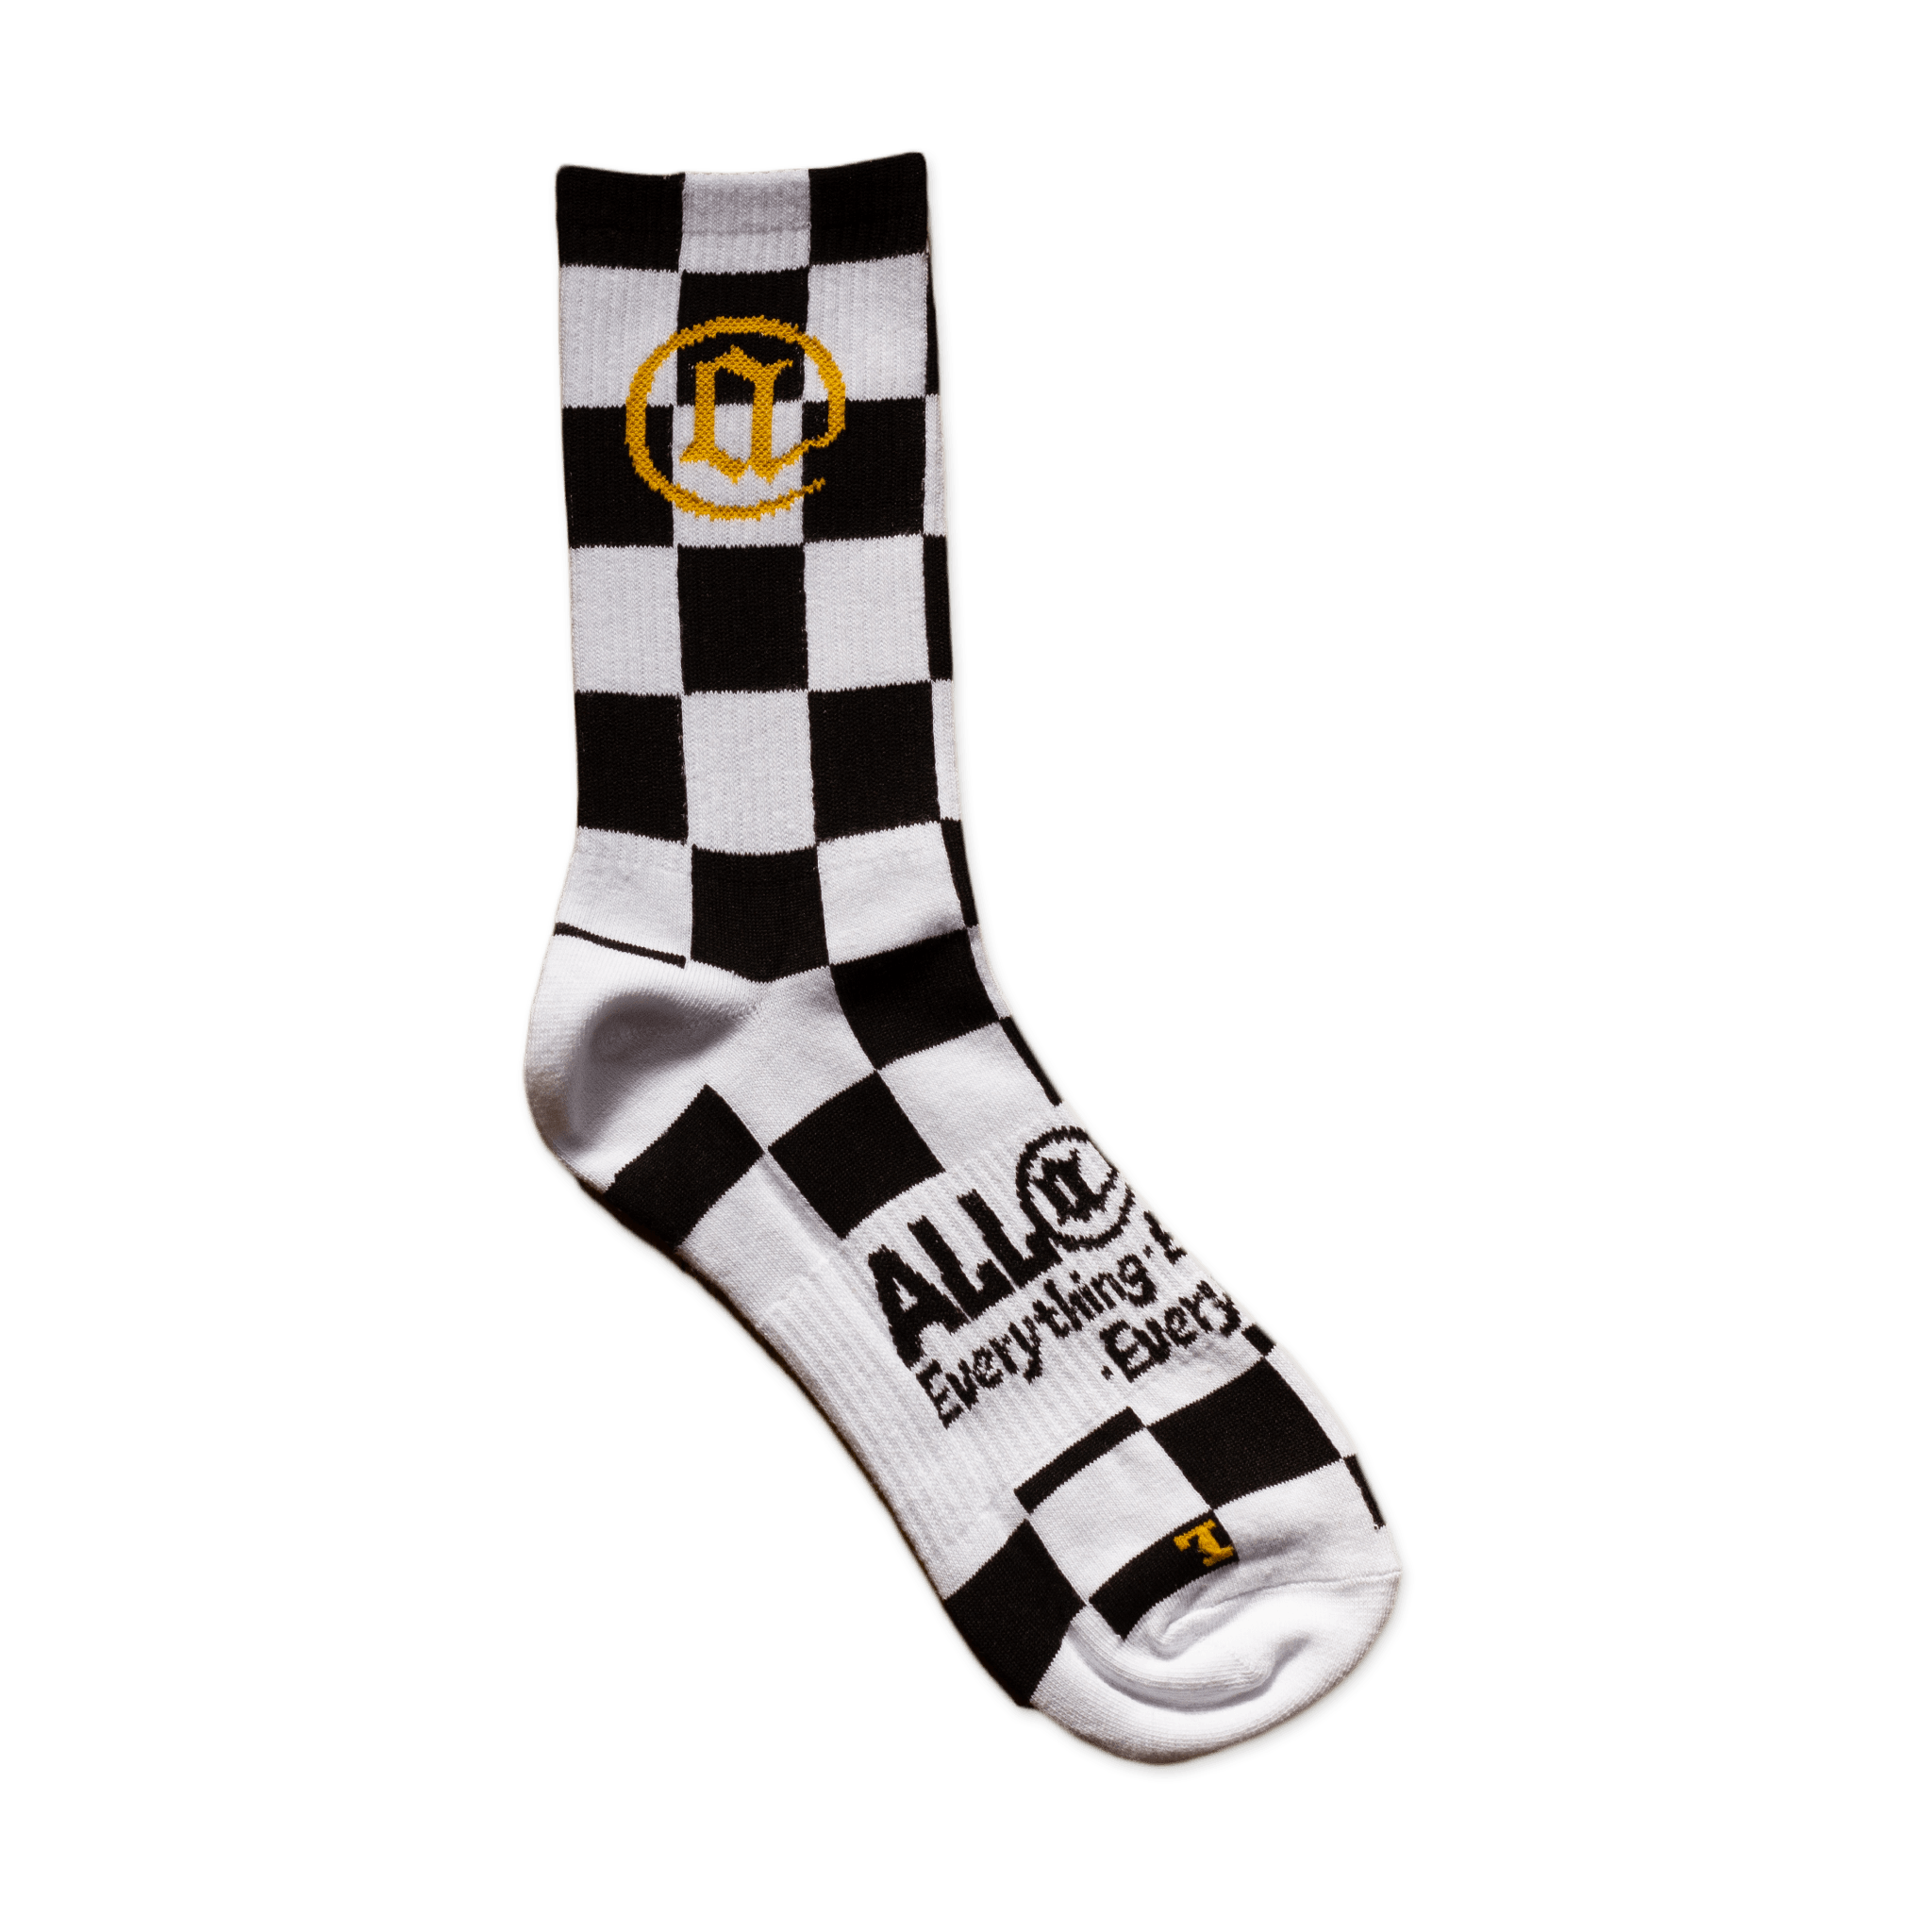 Racing Flag Socks - All@Once